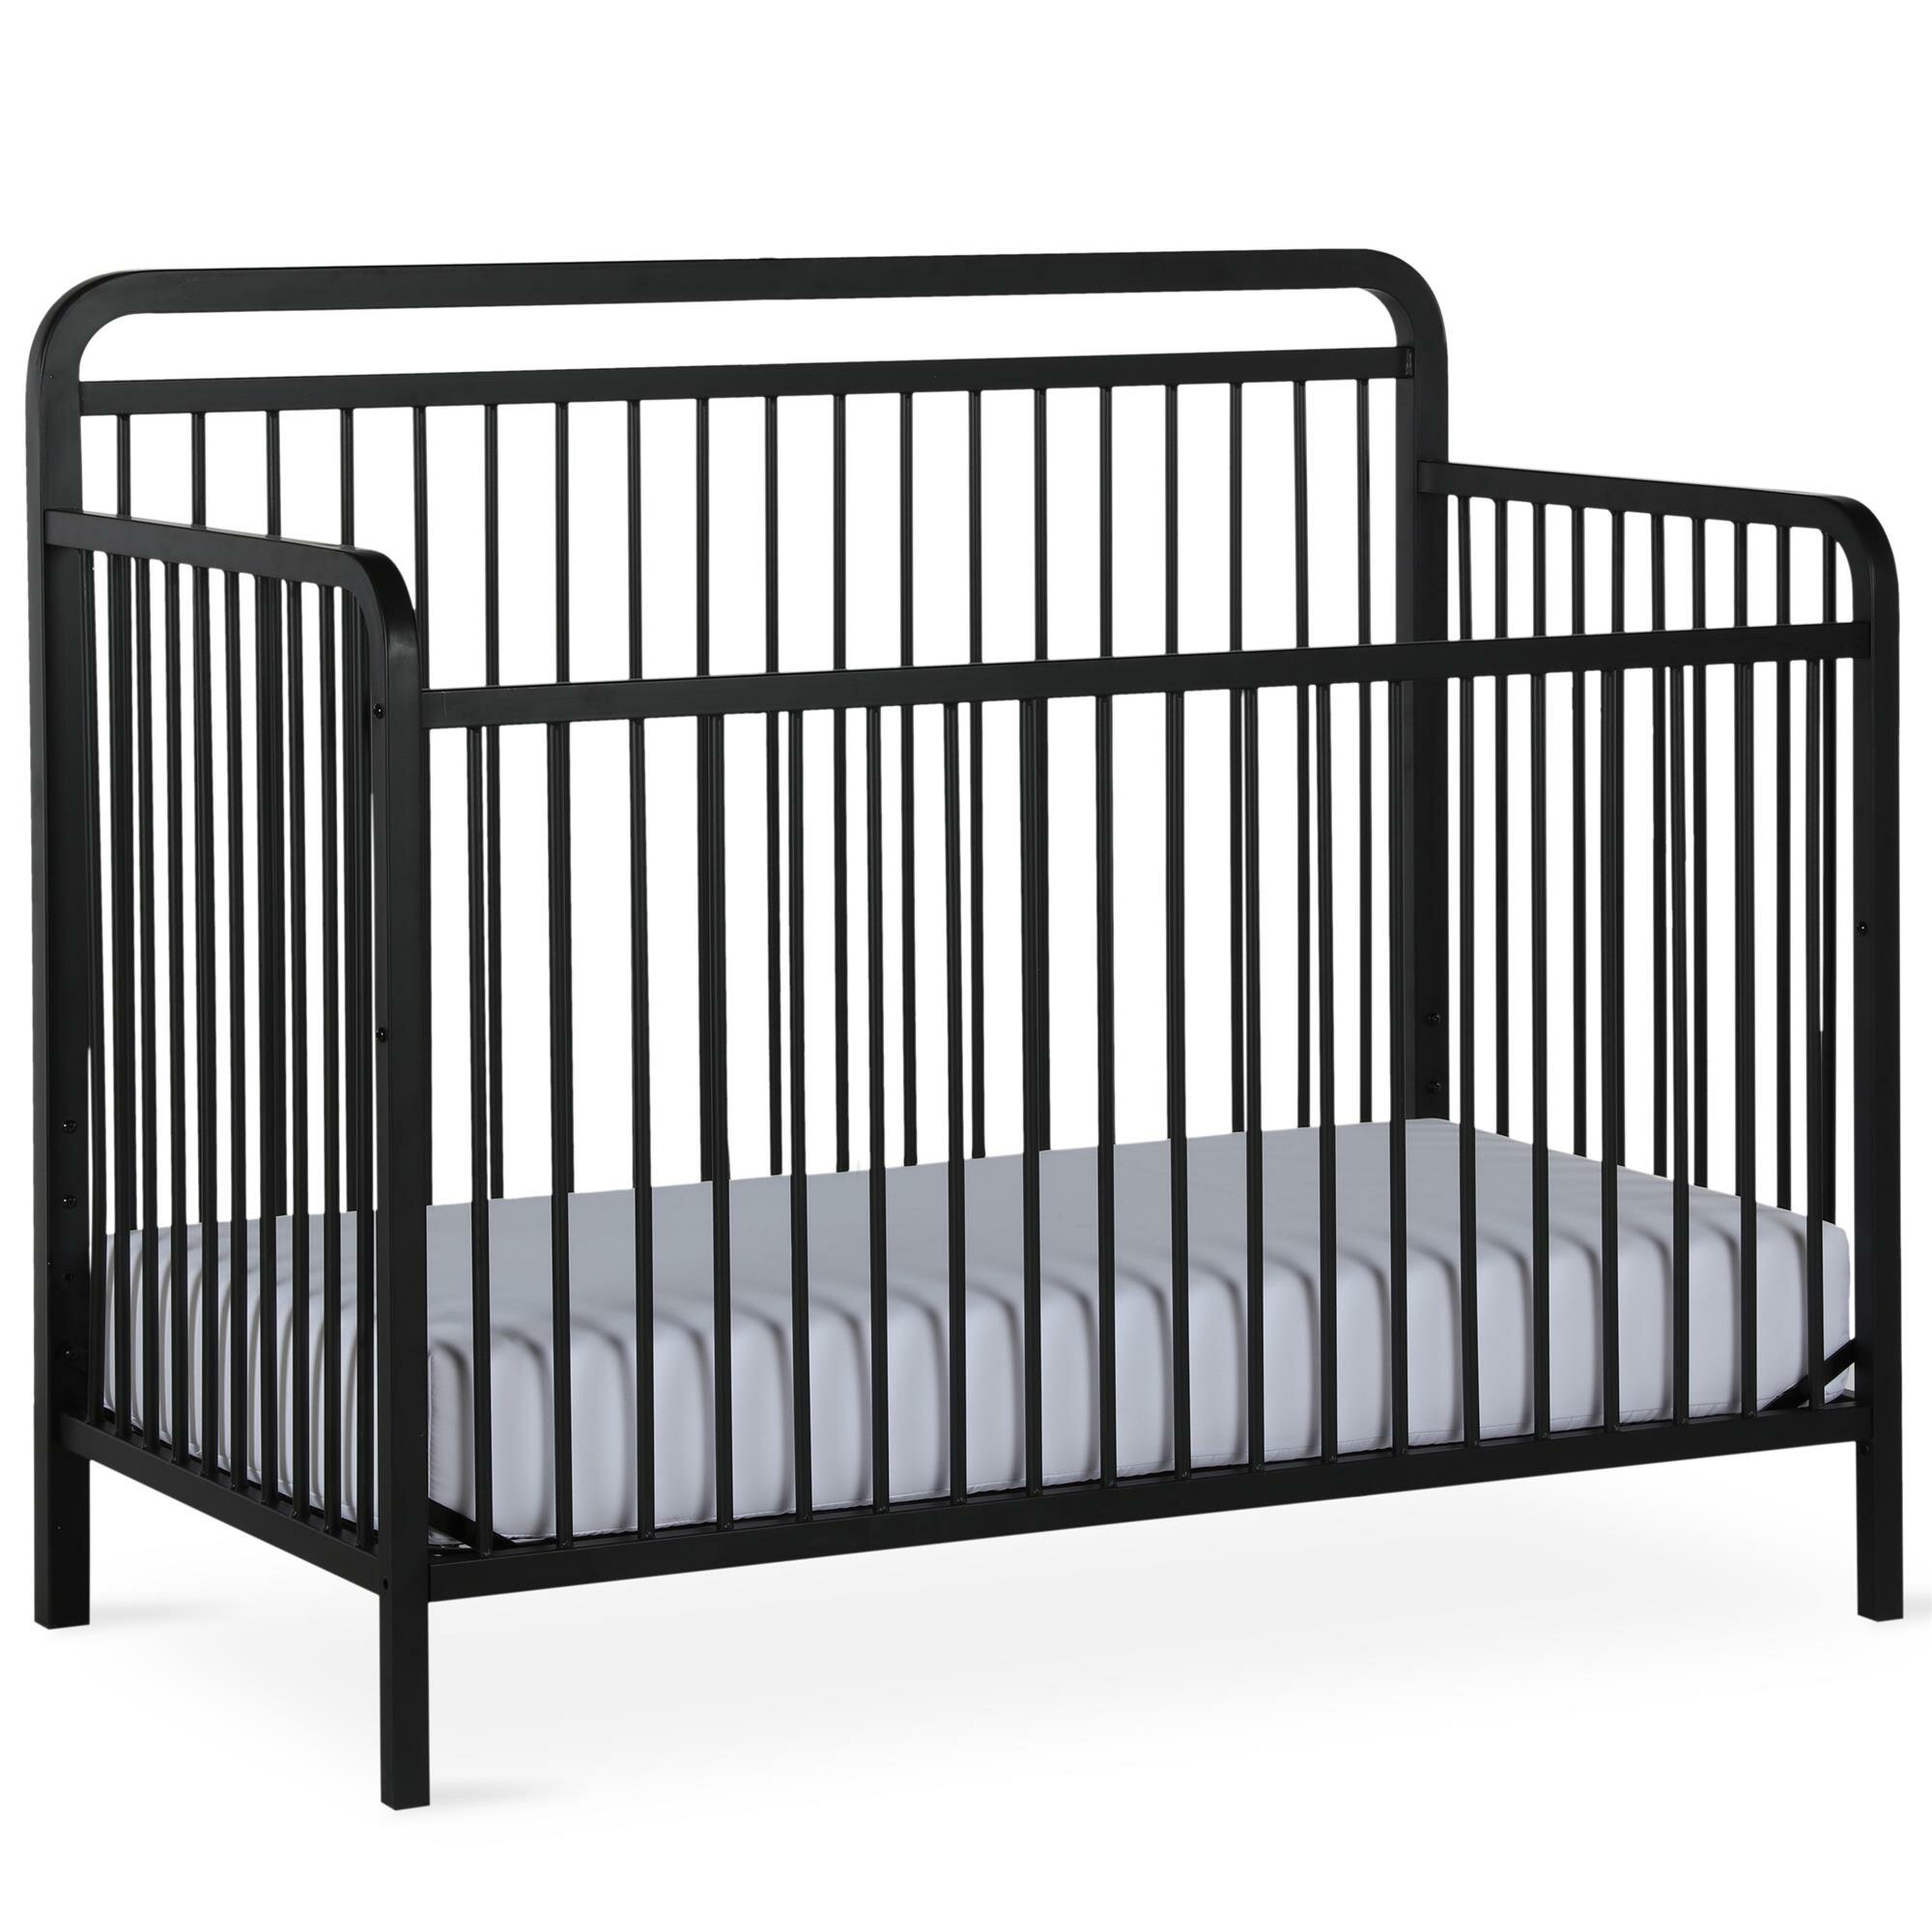 4 in 1 metal crib